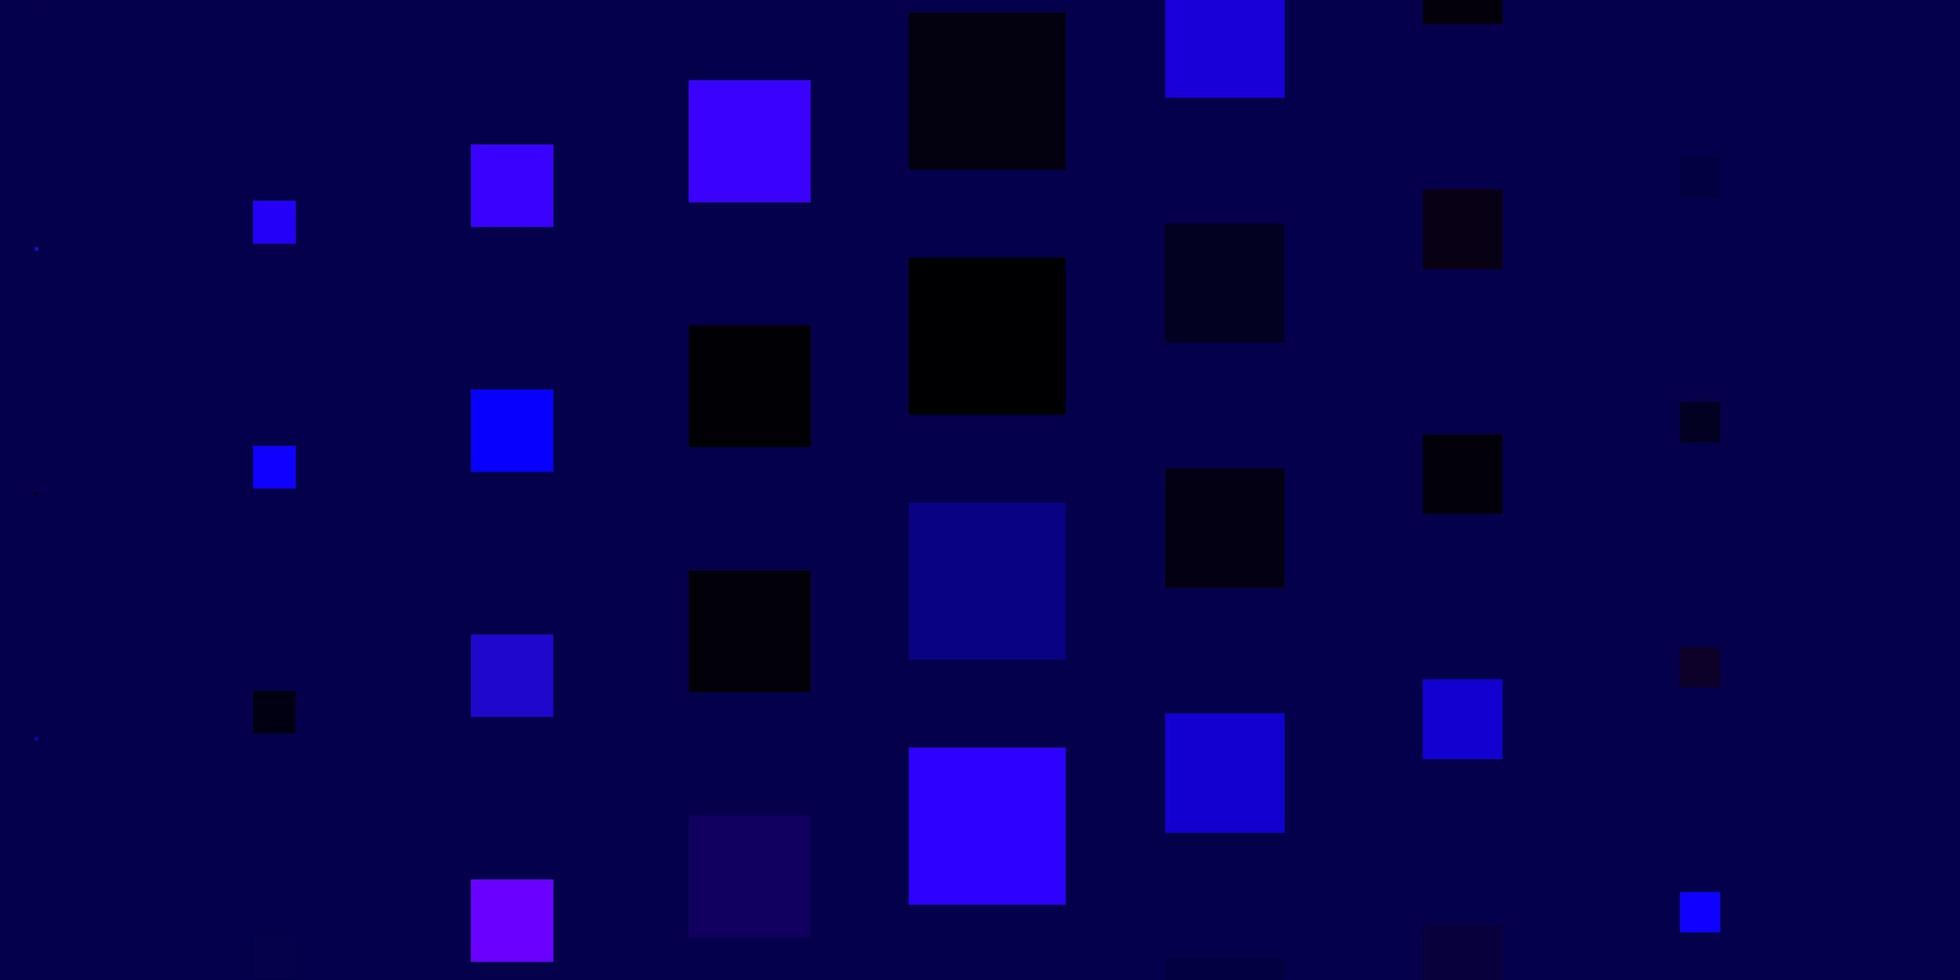 Fondo de vector rosa claro, azul en estilo poligonal. Ilustración colorida con rectángulos y cuadrados degradados. patrón para comerciales, anuncios.